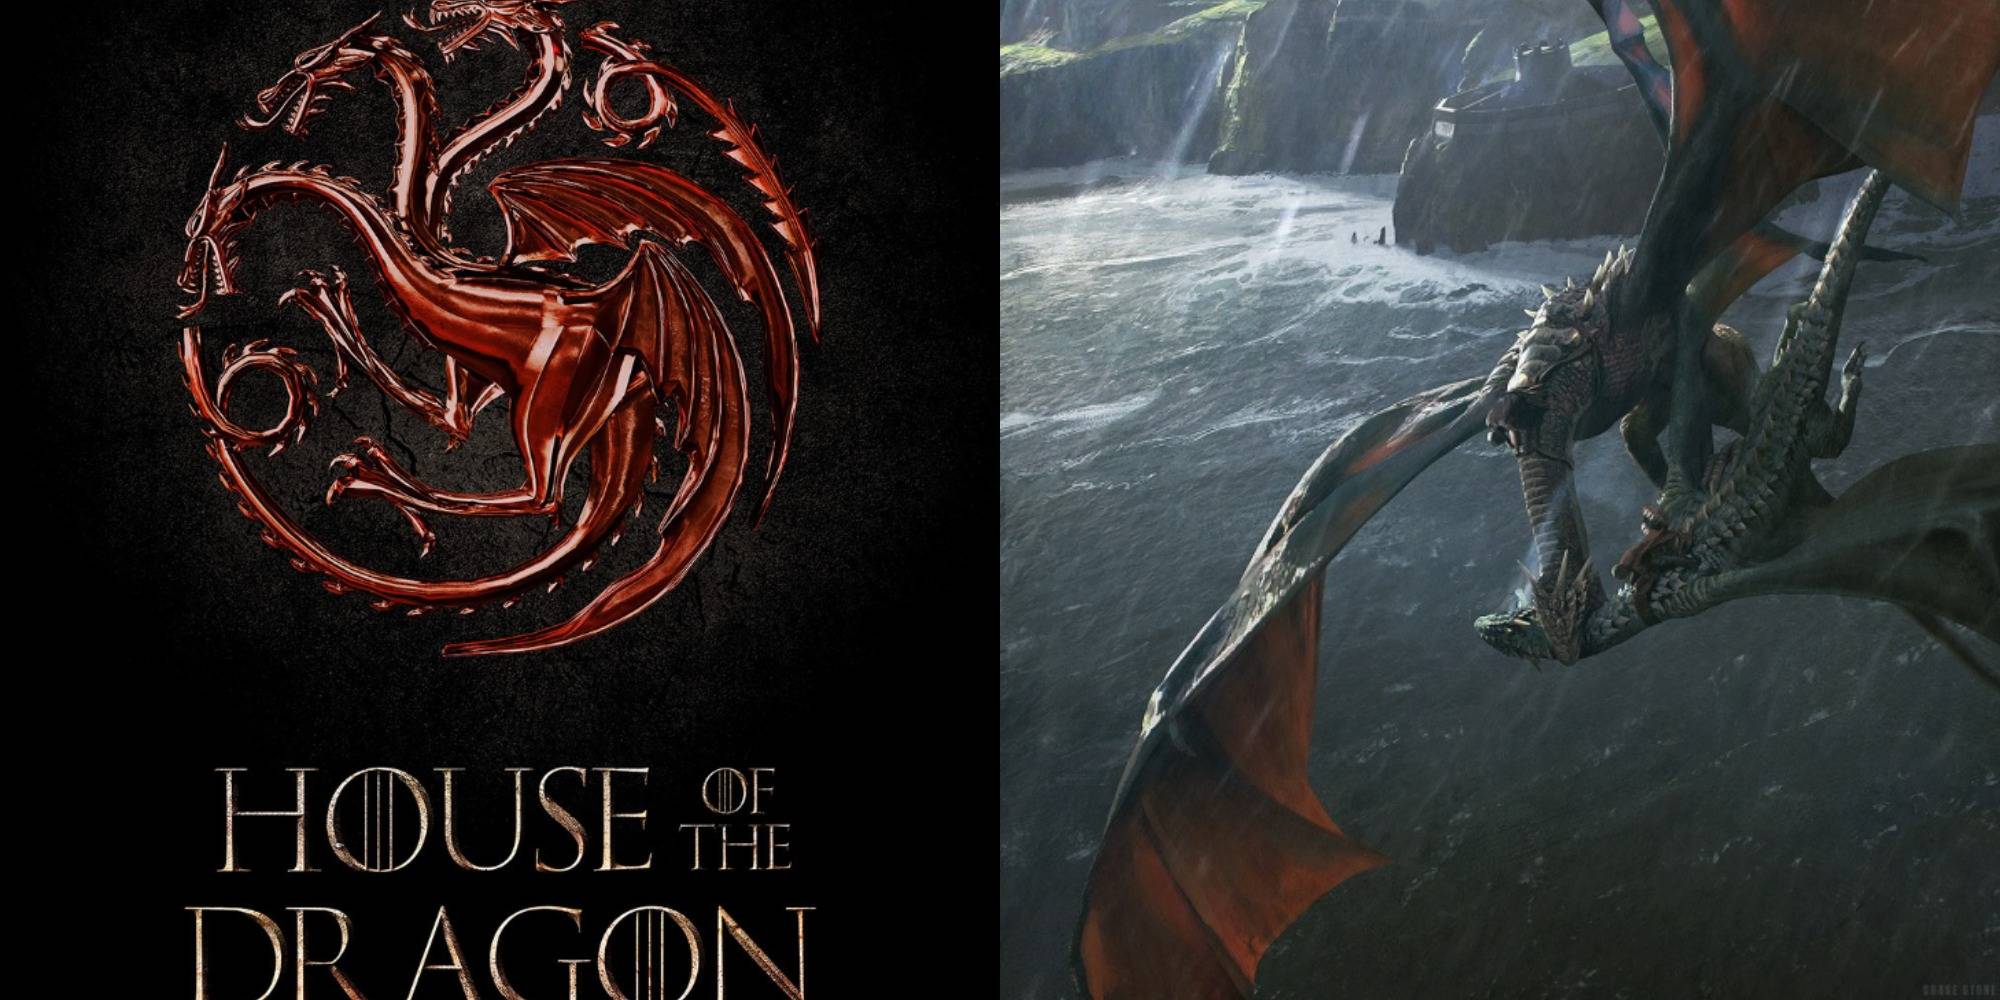  Image divisée montrant l'affiche de la Maison du Dragon et une représentation de la bataille entre Arrax et Vhagar 